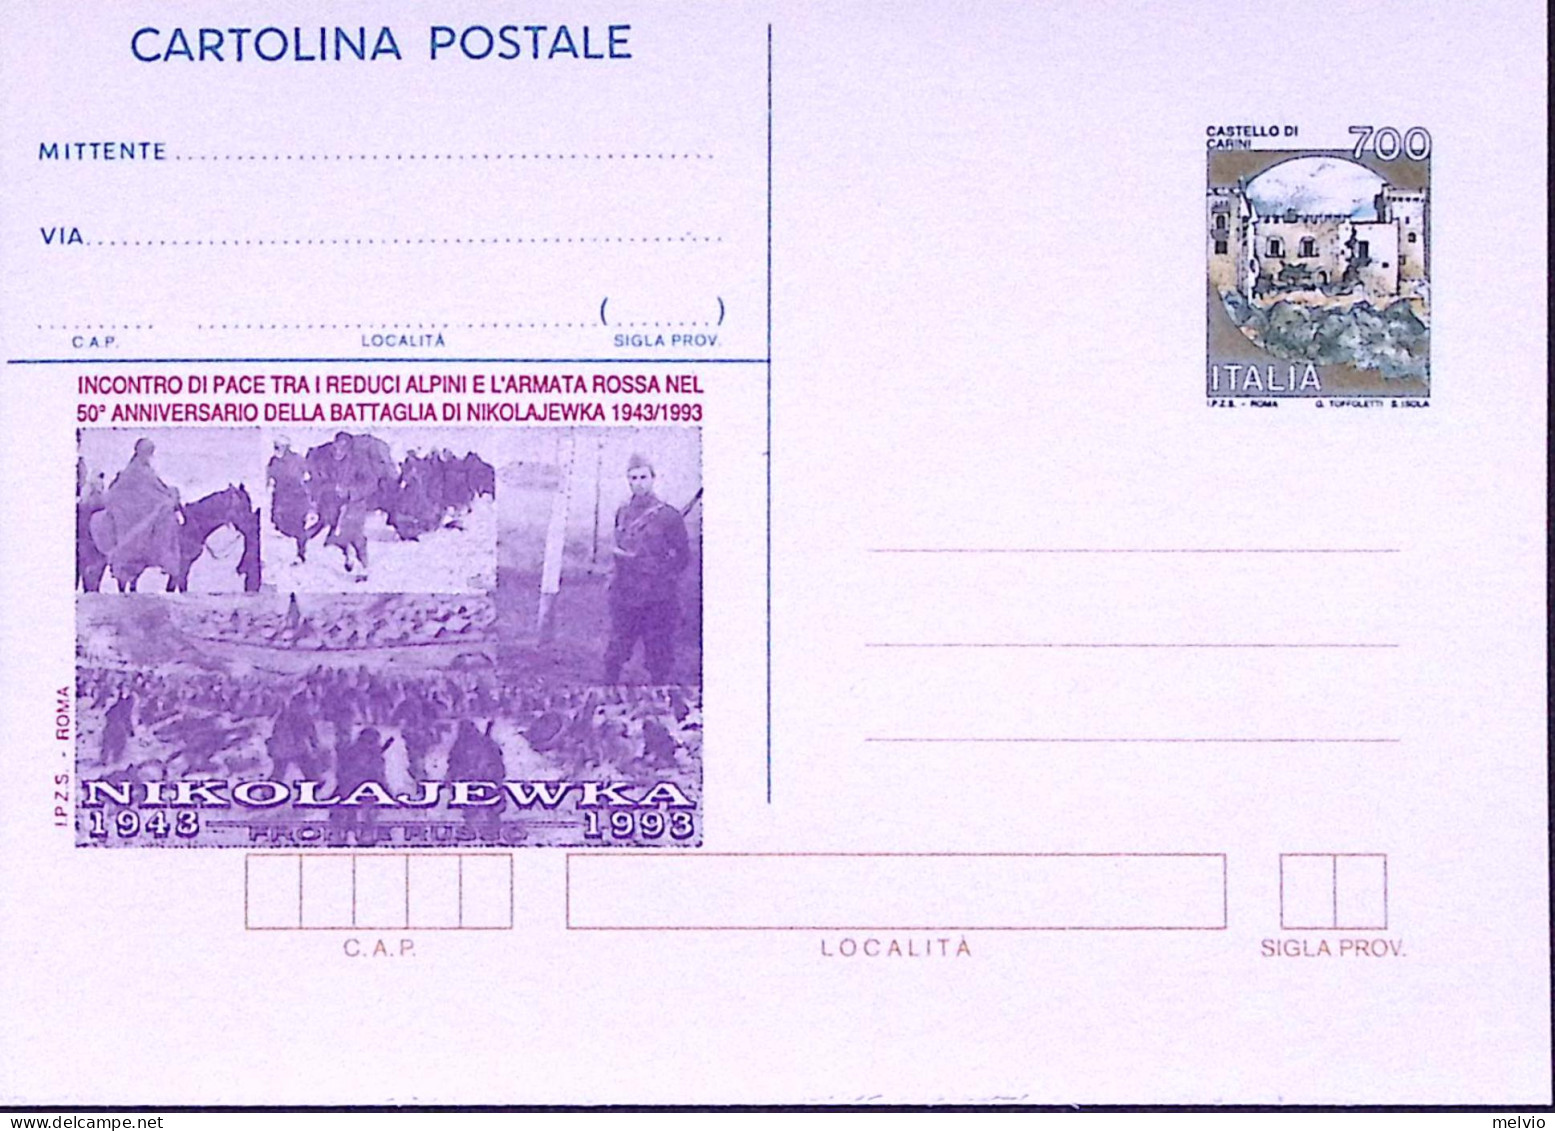 1993-BATTAGLIA DI NIKOLAJEWKA Cartolina Postale Castelli Lire 700, Nuova - Stamped Stationery